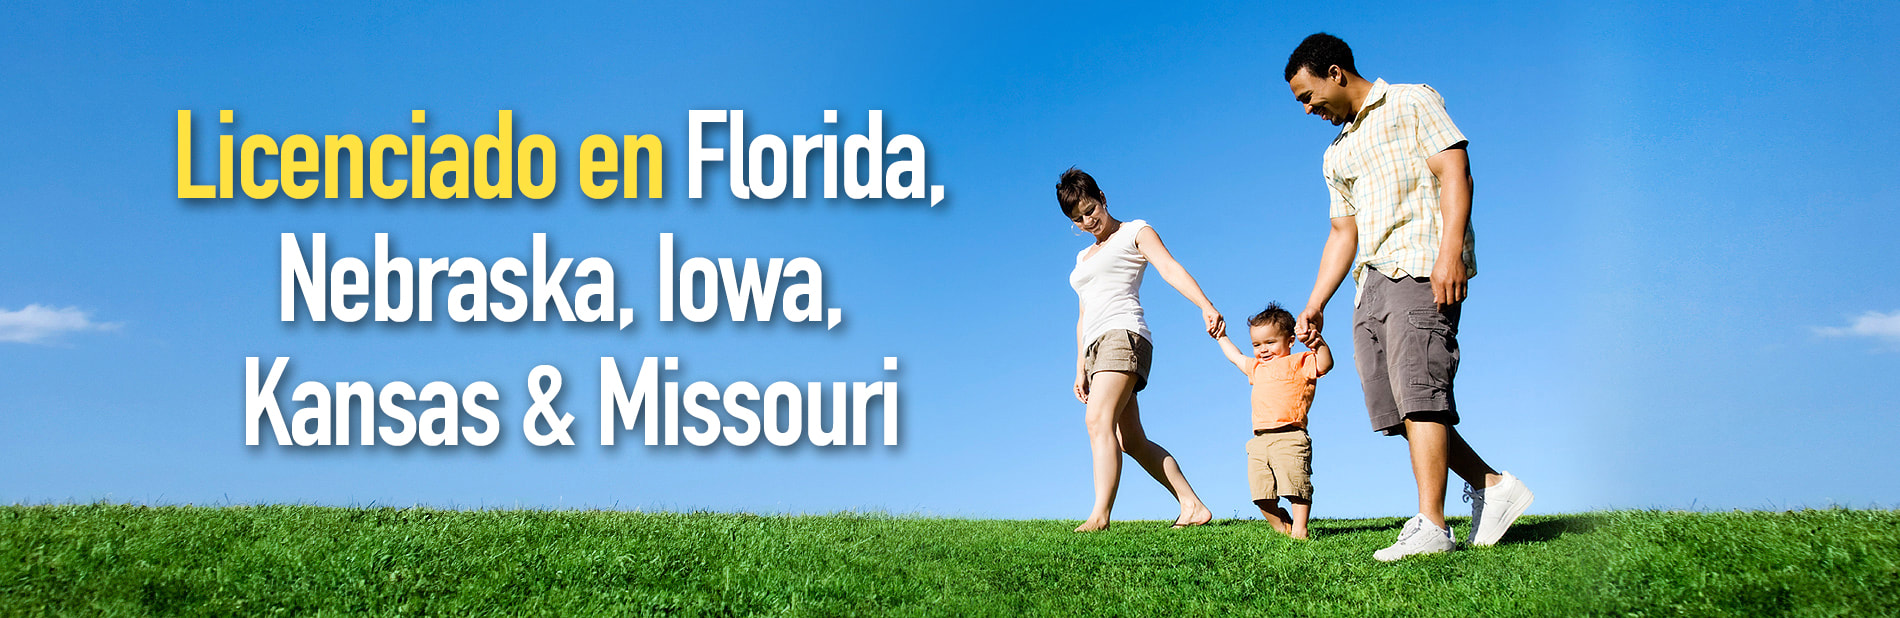 Licensed in Florida, Nebraska, Iowa, Kansas and Missouri graphic